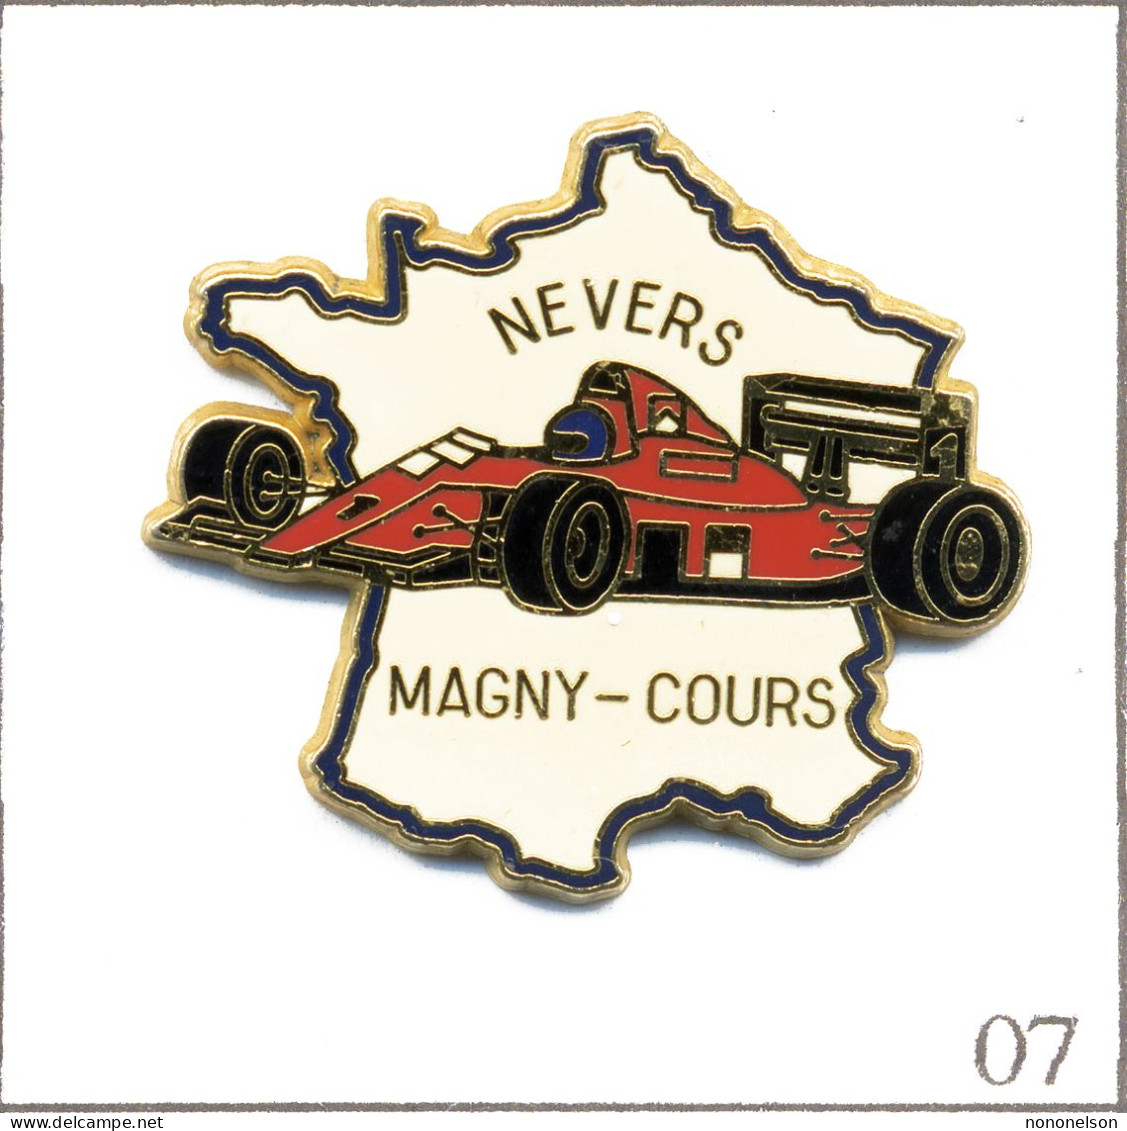 Pin's Automobile - Course / Formule 1 - Circuit De Nevers Magny-Cours (58). Est. Béraudy/Vaure. Zamac. T976-07 - F1